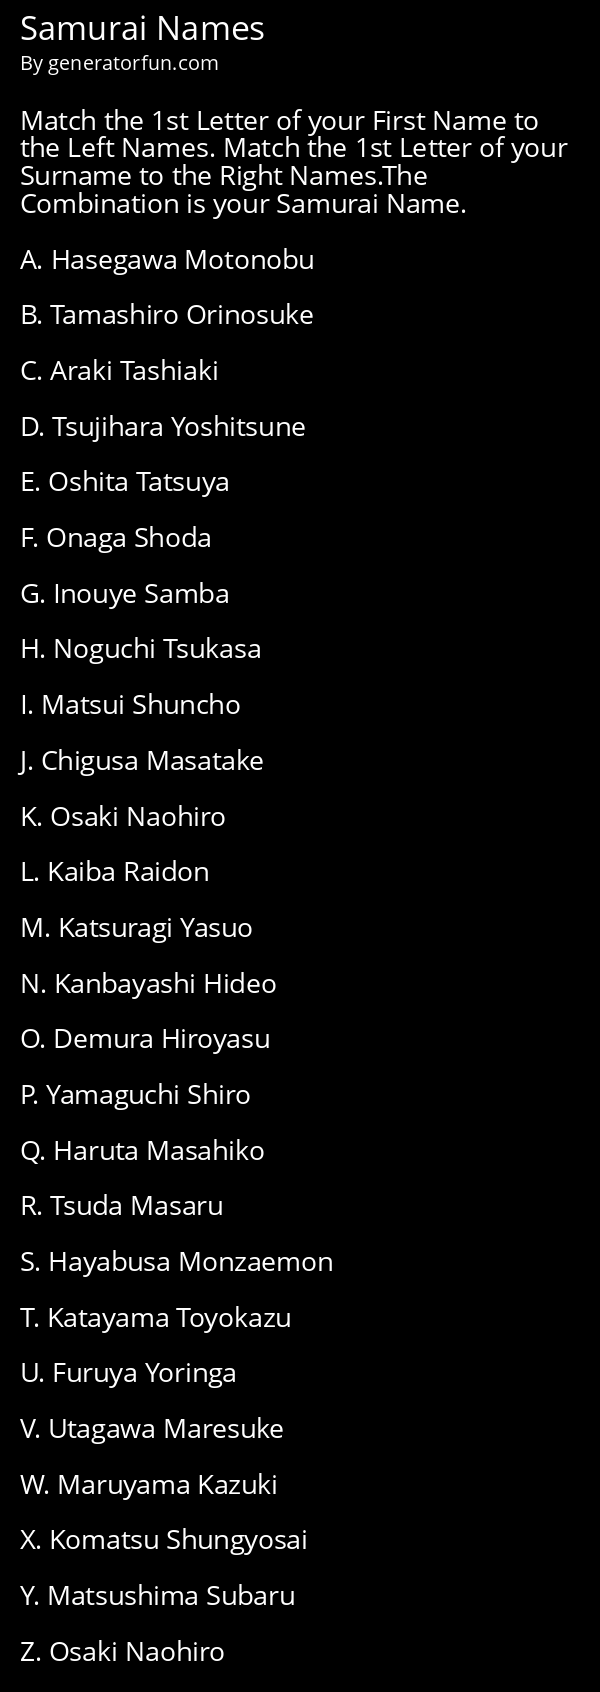 Samurai Names